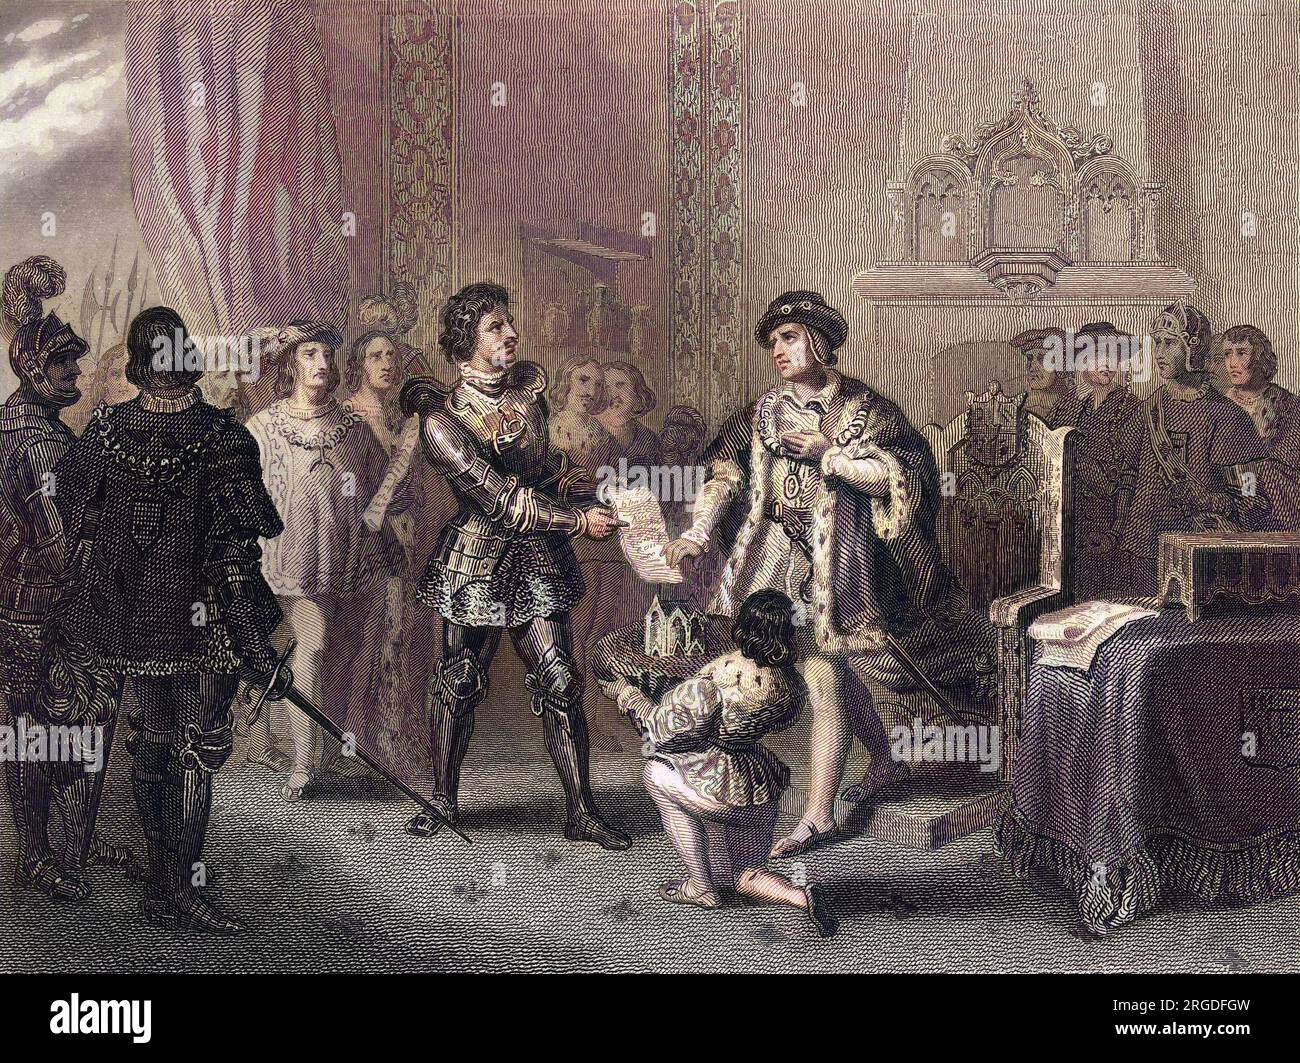 Ludwig XI trifft auf Charles le Temeraire, duc de Bourgogne, in Peronne : jeder will sich gegenseitig austricksen, aber Charles ist der kniffligere und härtere König. Stockfoto